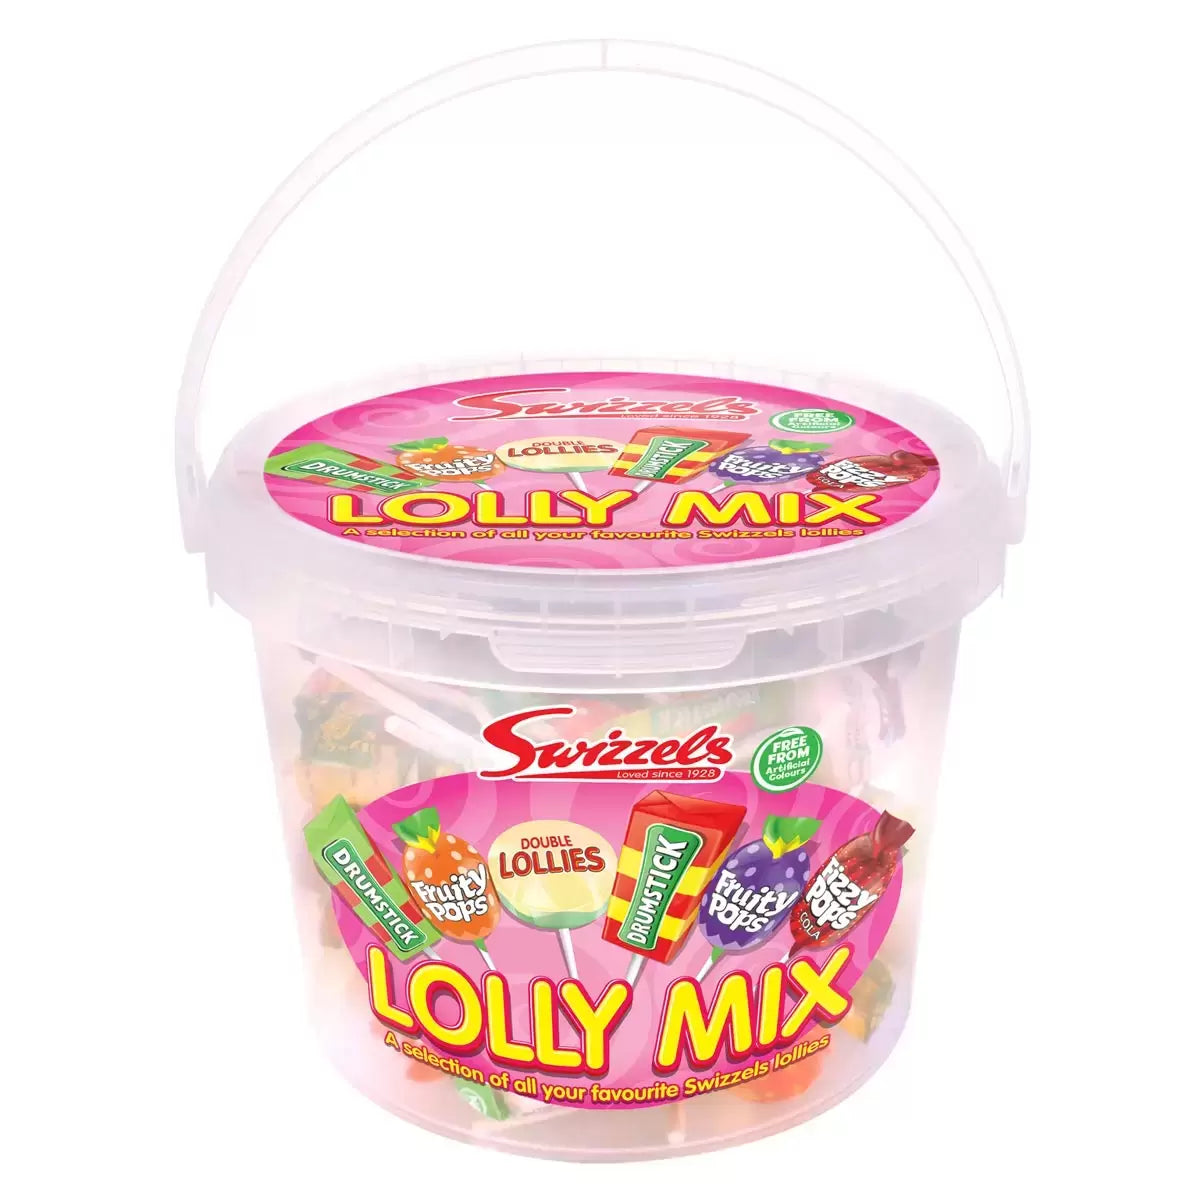 Swizzels Matlow Lolly Mix - 1.06kg